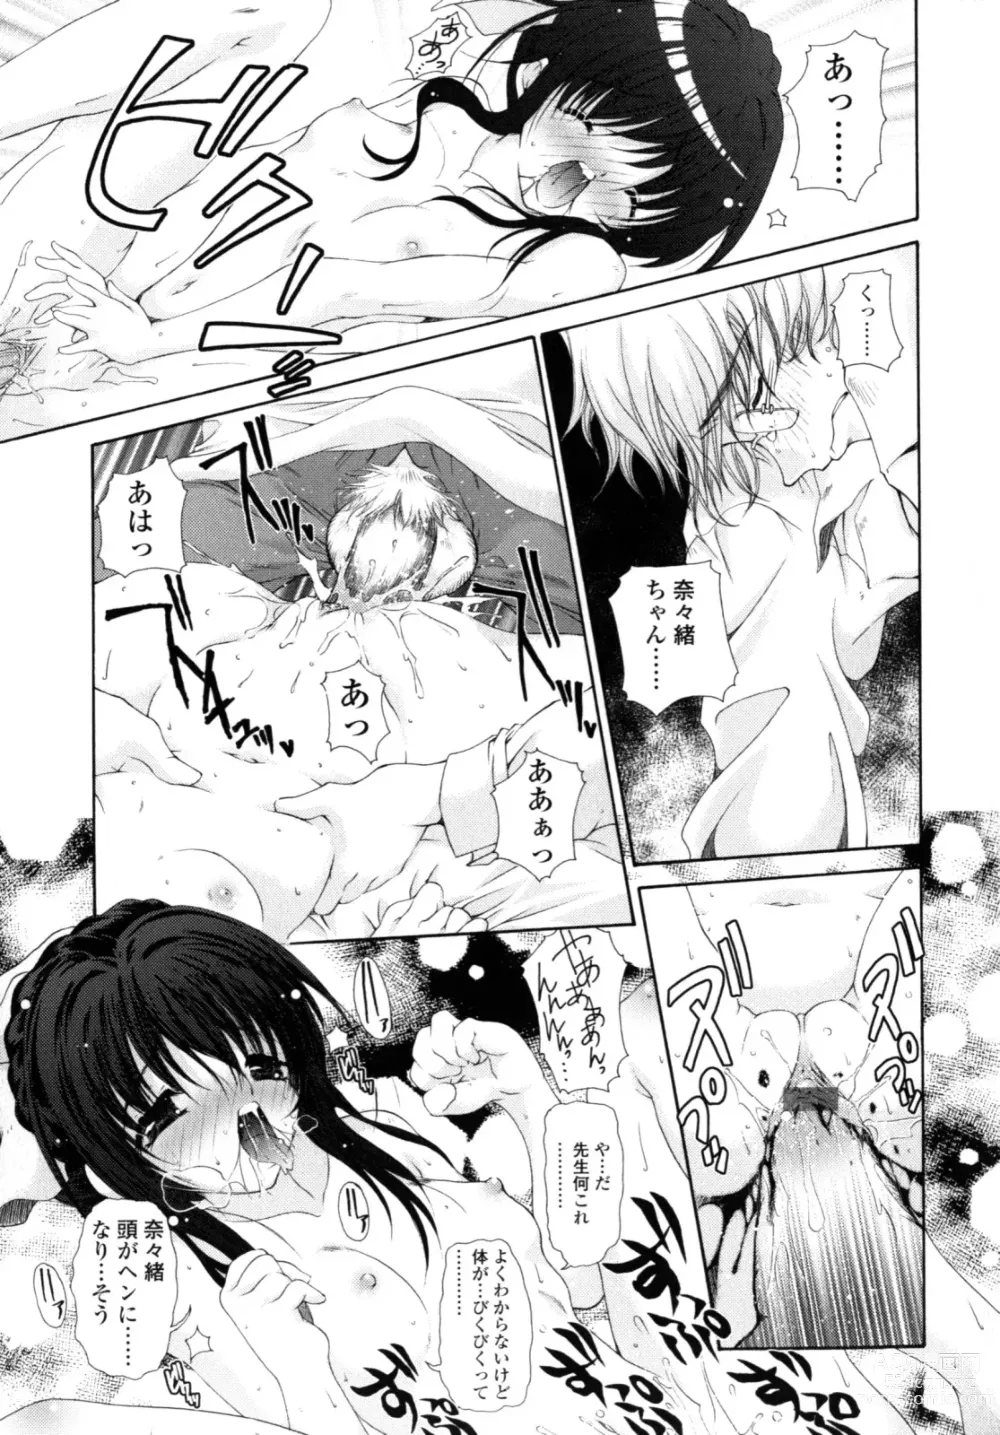 Page 168 of manga Yawaraka Peach